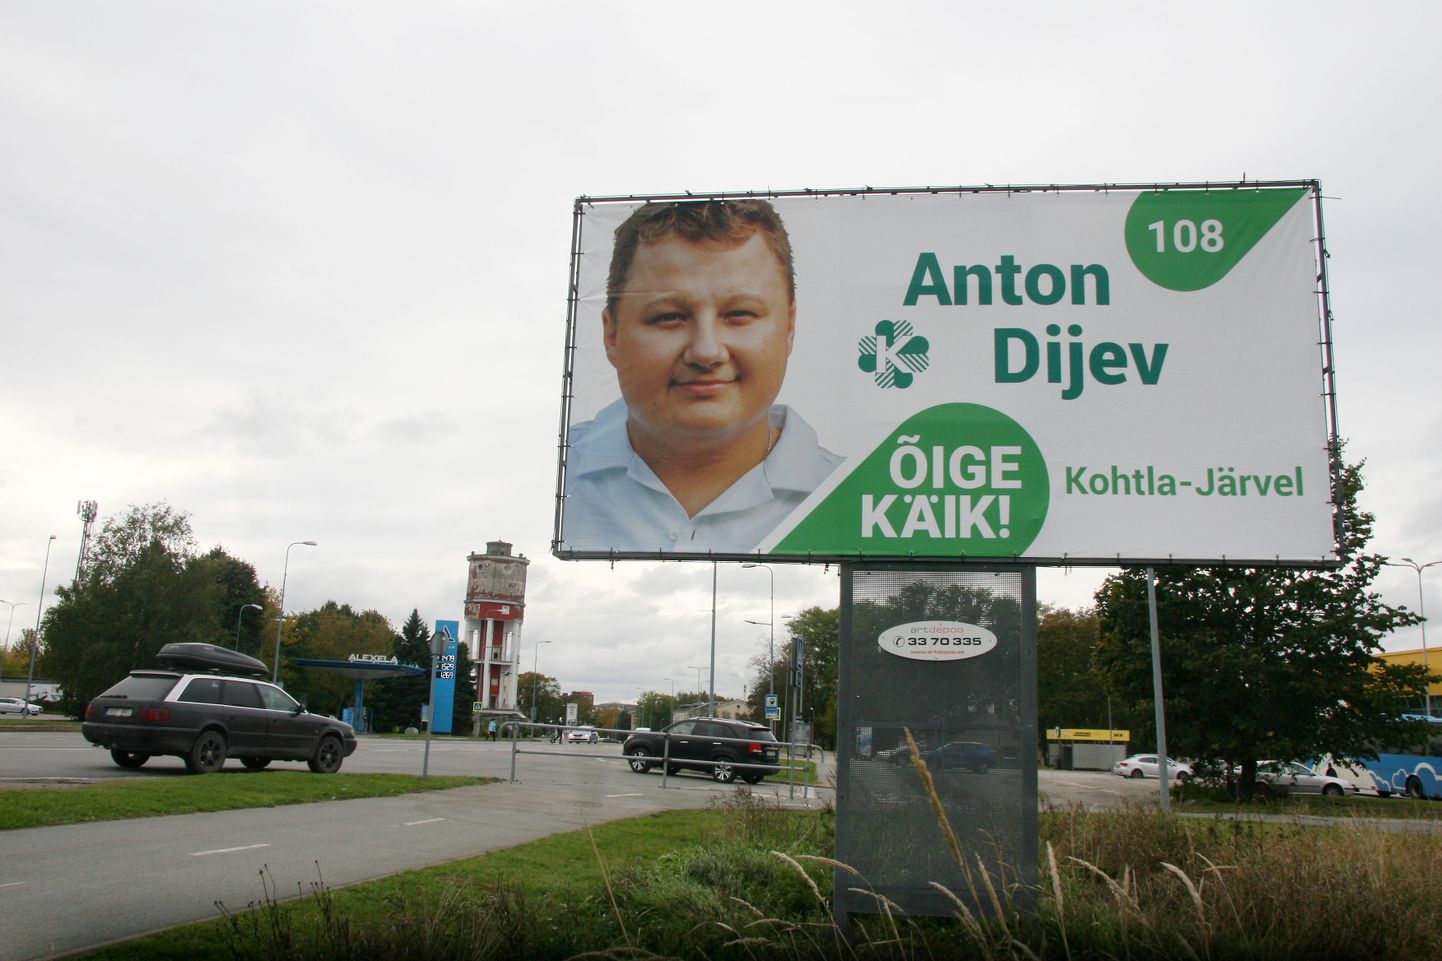 Жители Кохтла-Ярве избрали Антона Диева в горсобрание в качестве кандидата Центристской партии. Однако партия в начале августа нынешнего года исключила его из своих рядов.